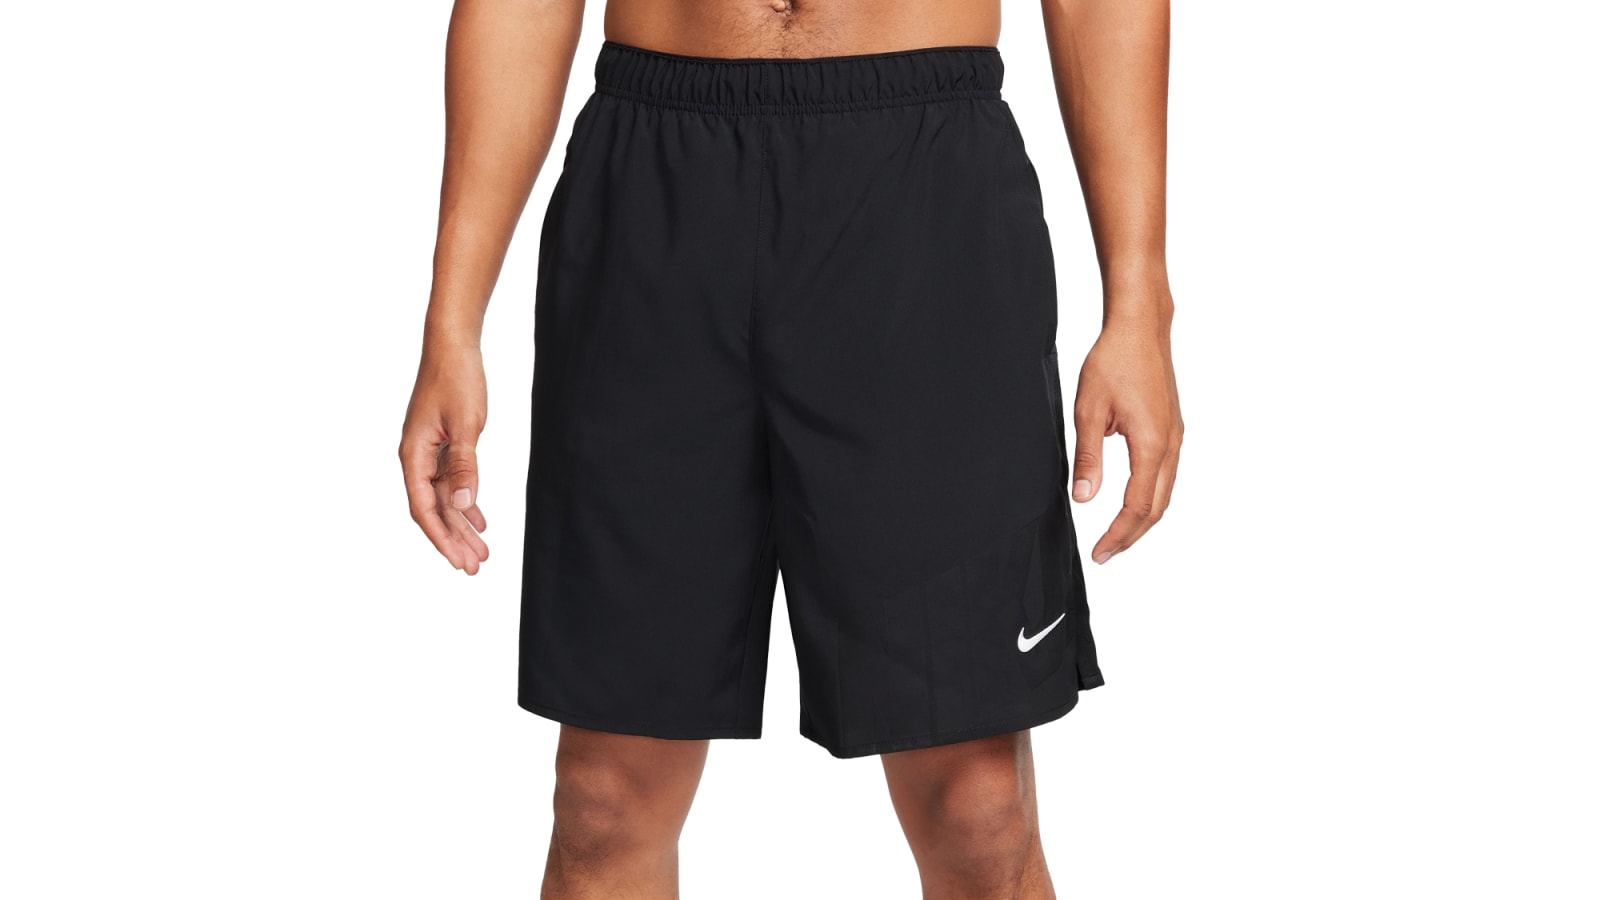 Nike Men's Dri-FIT 9 Challenger Running Shorts - Black / White